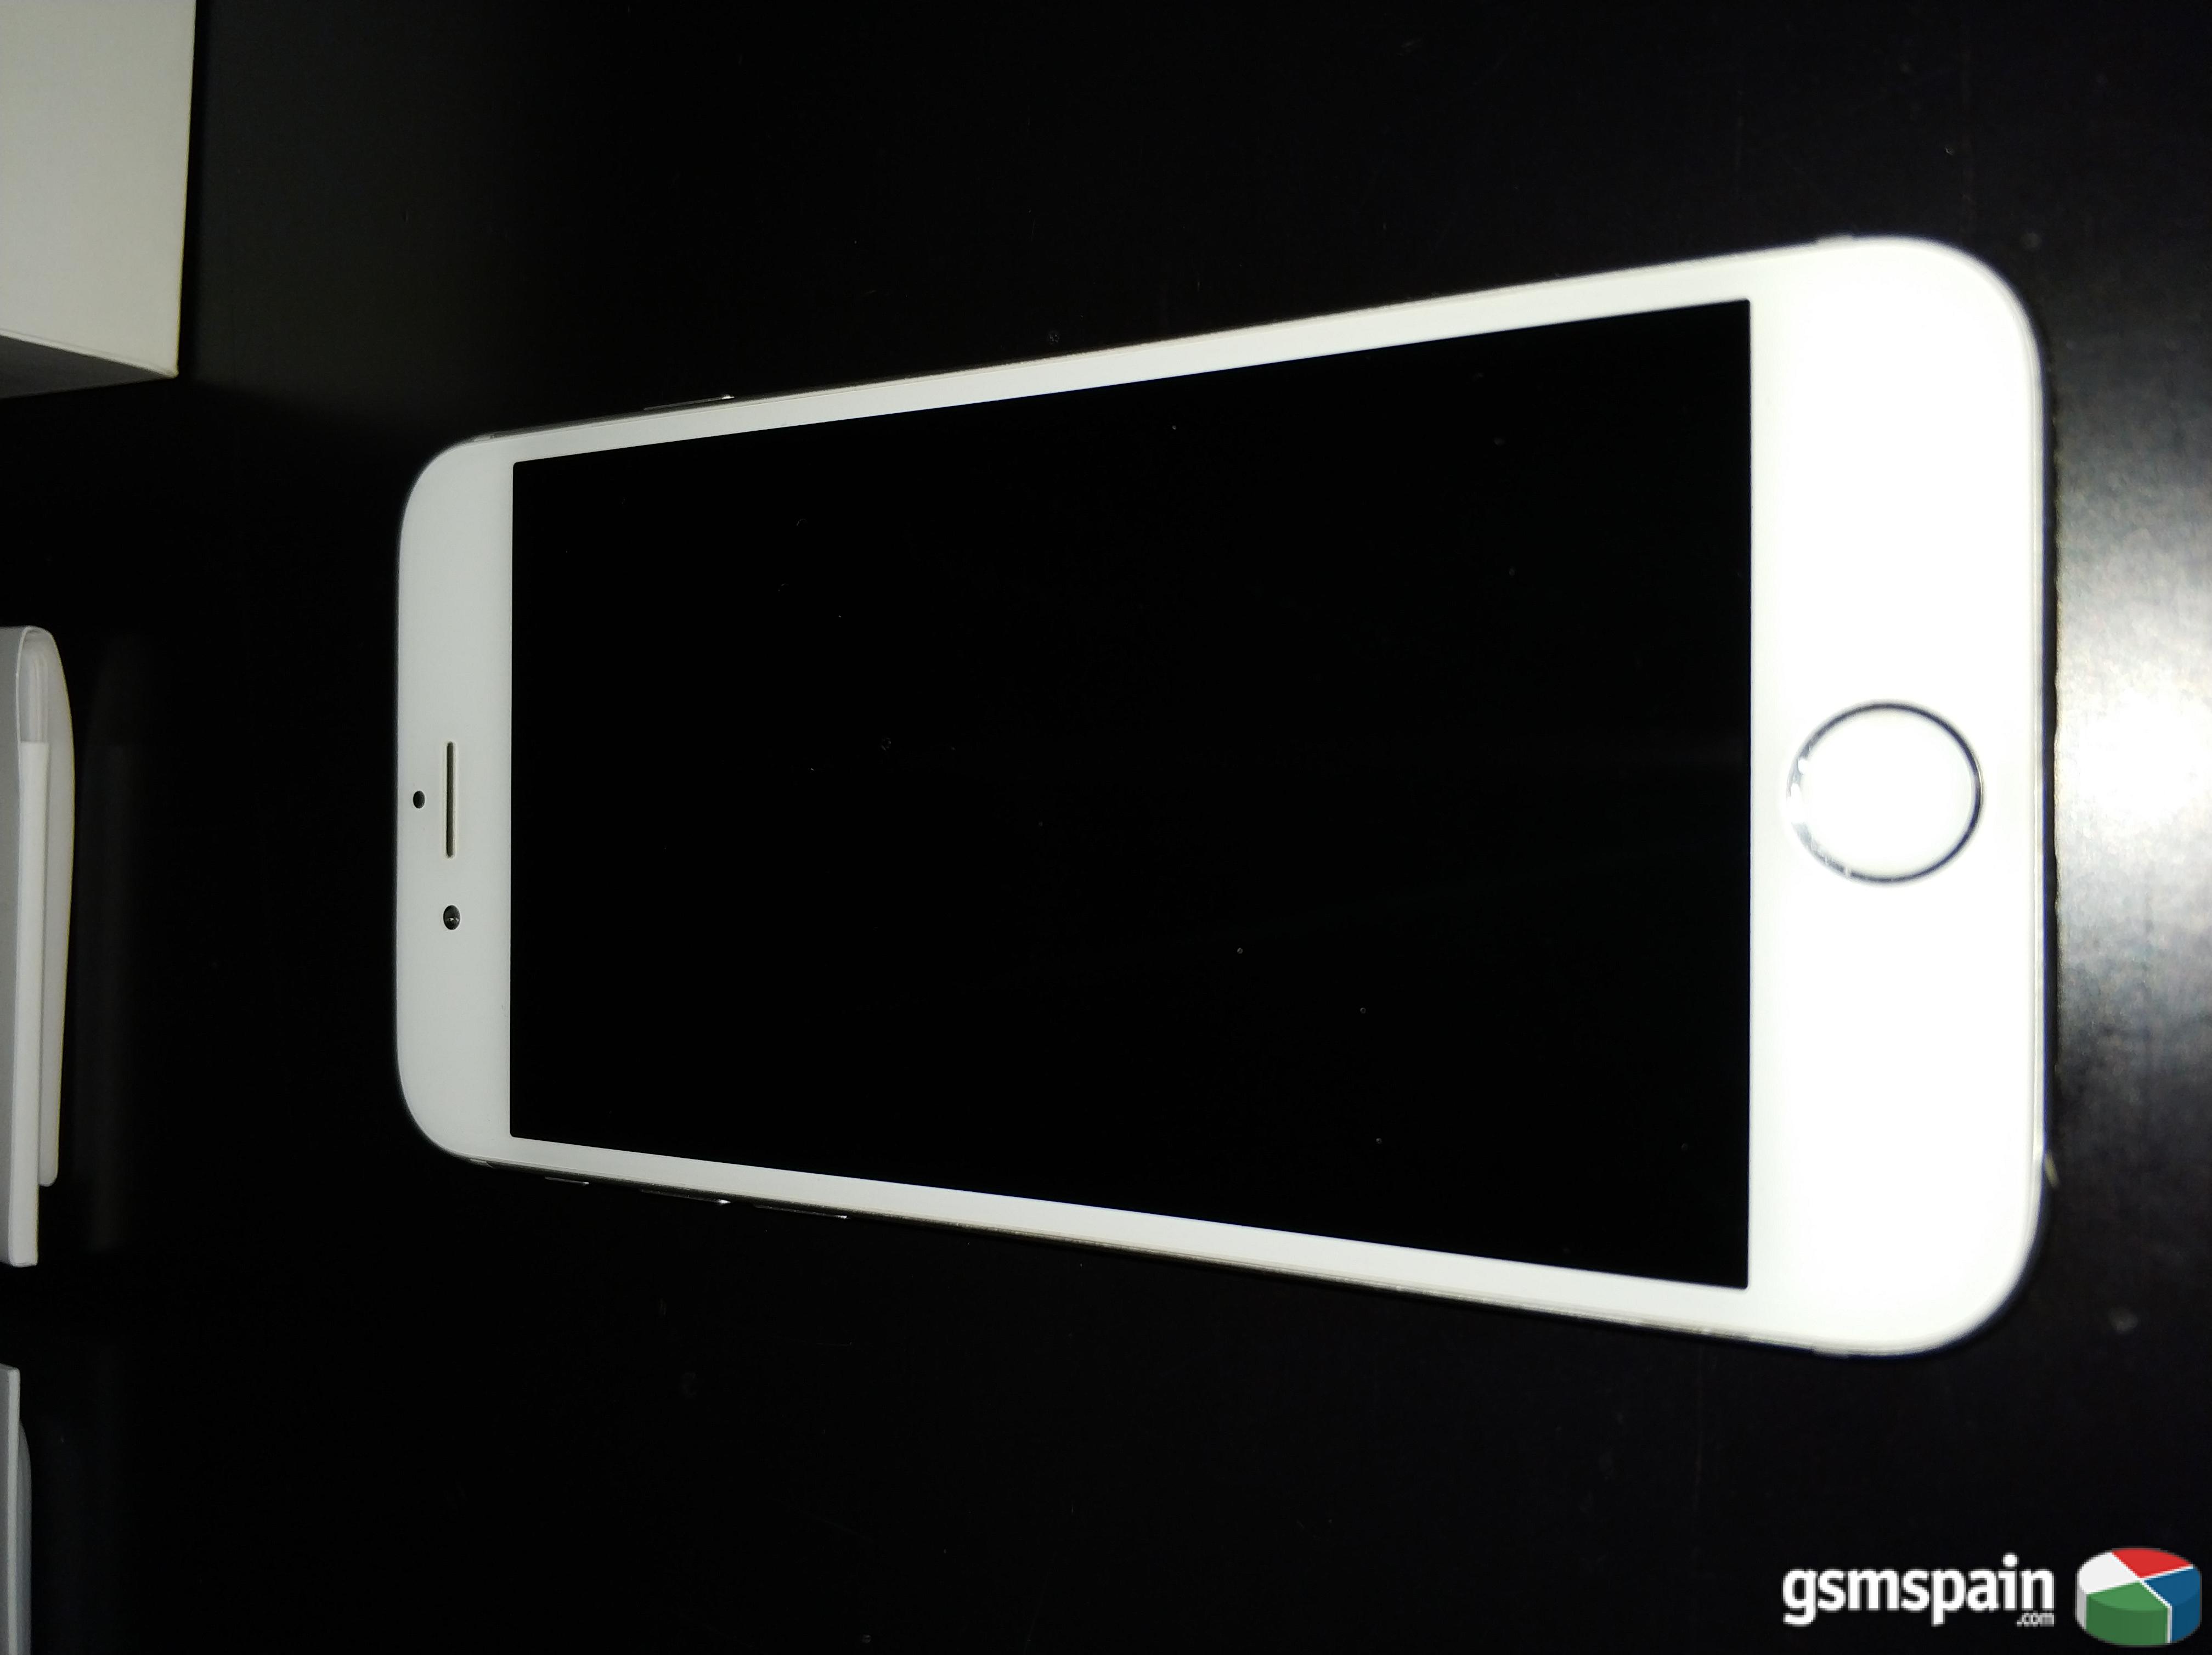 [VENDO] iPhone 6 - 16 Gb - Plata - Factura, funda y caja original